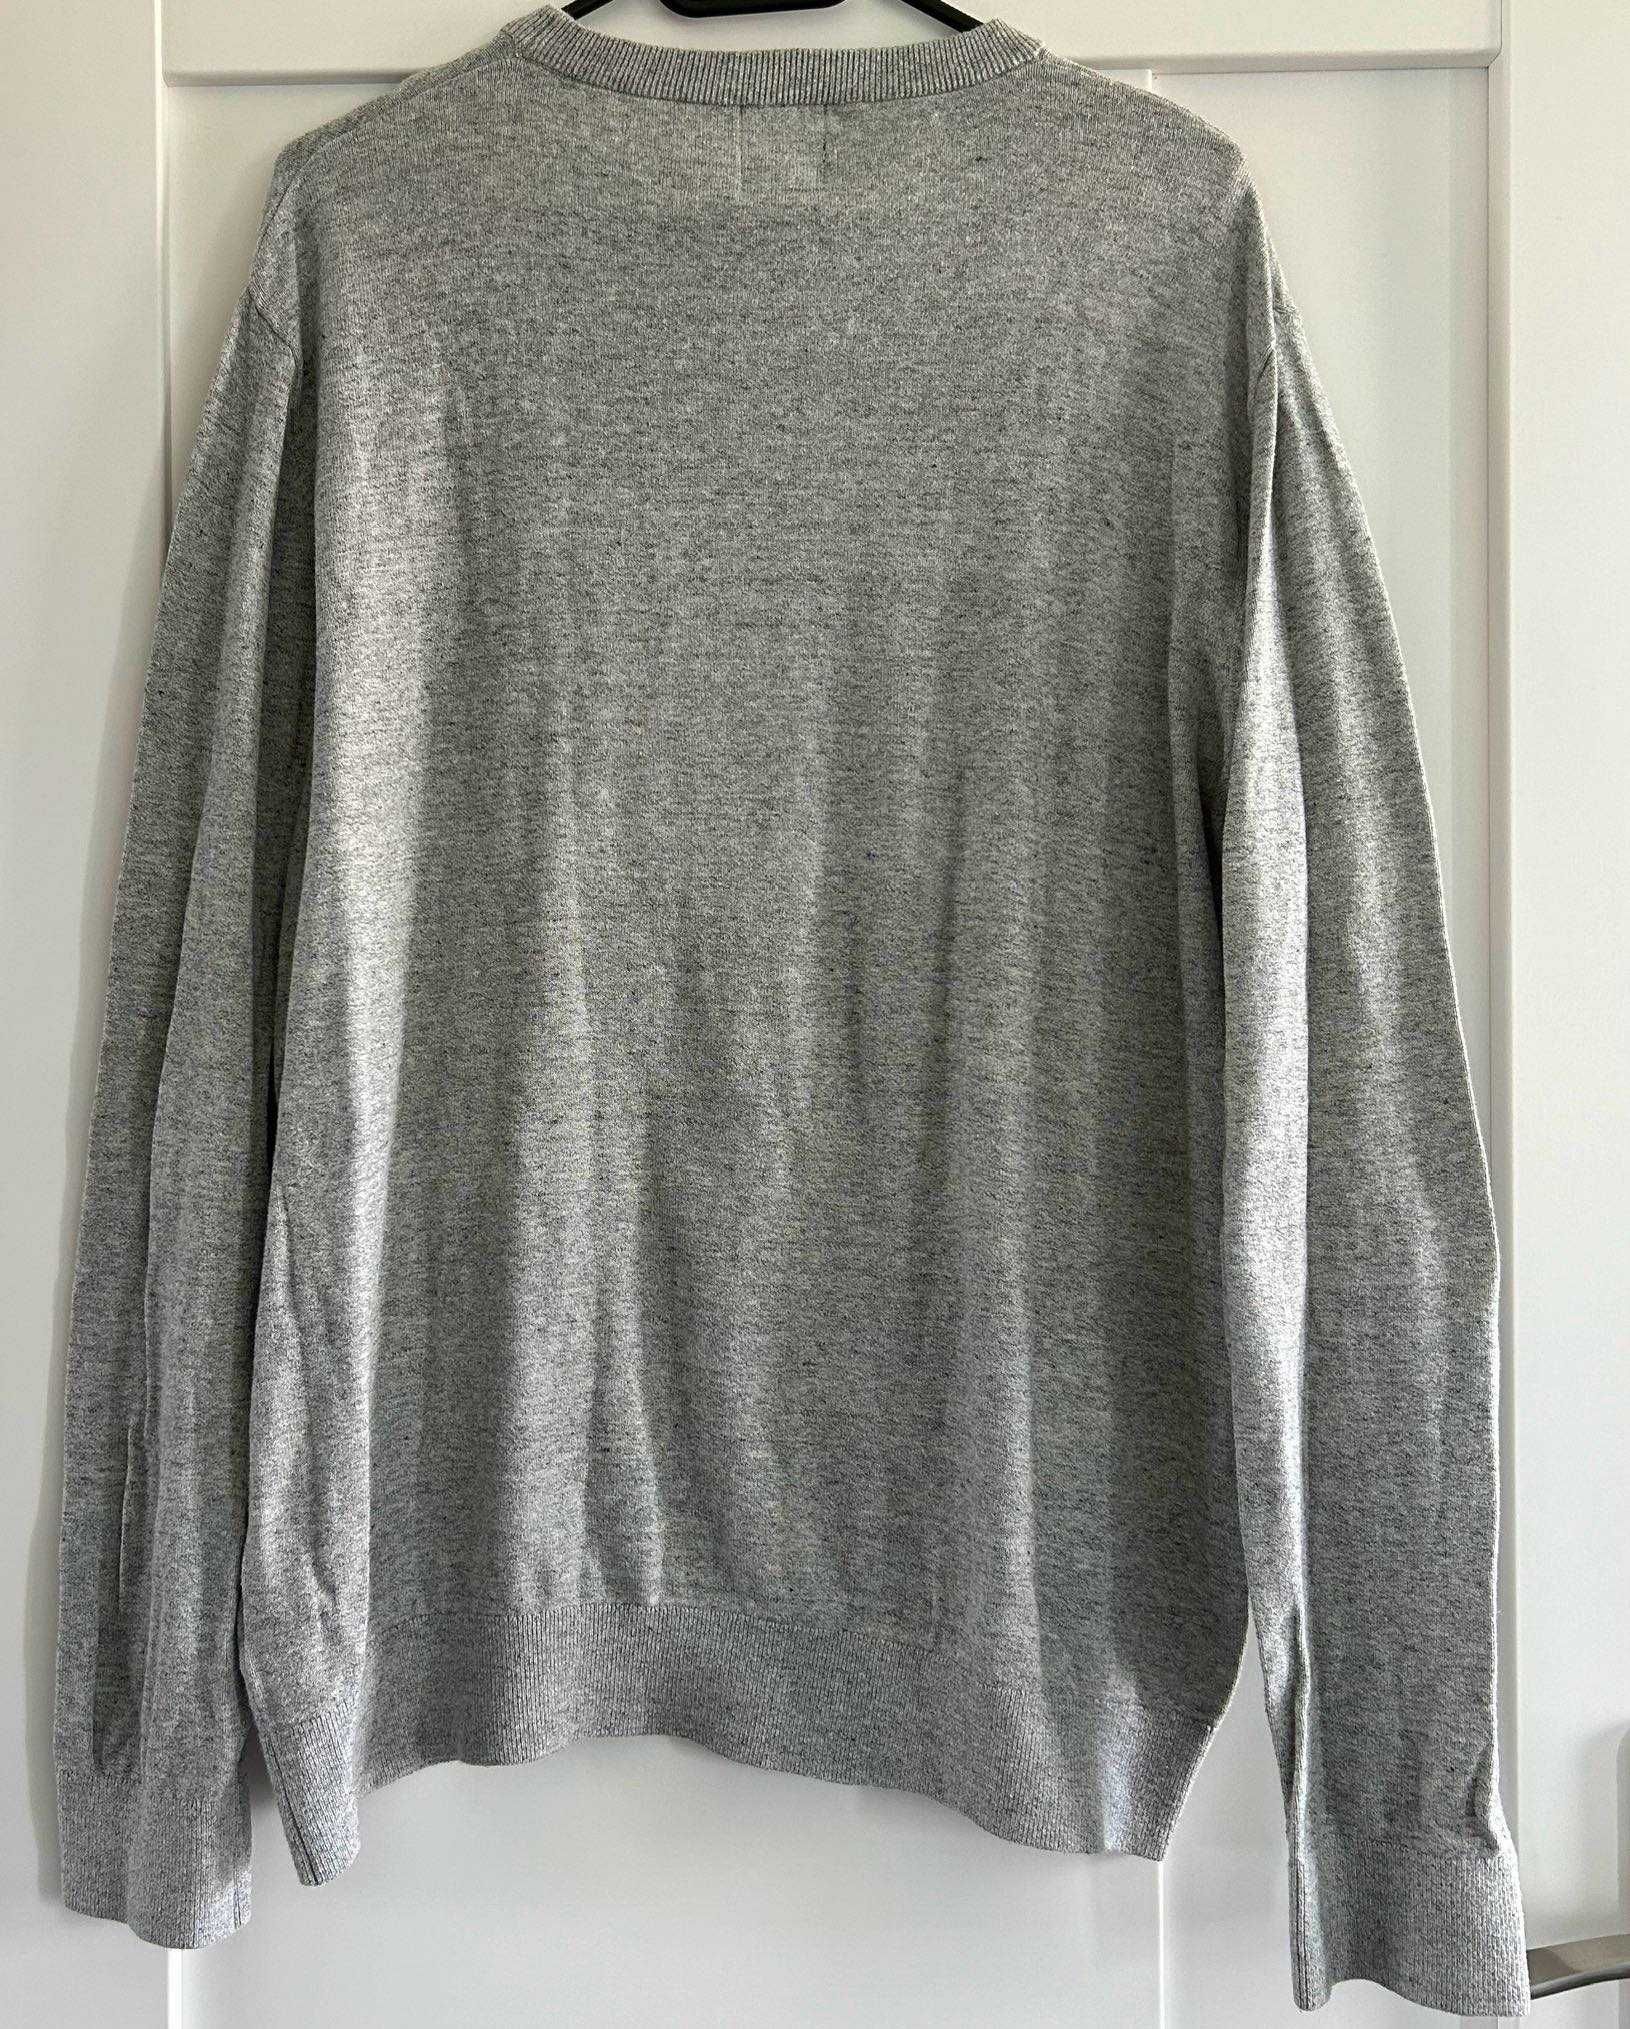 Lekki duży sweter gładka bluza męska H&M / 100% bawełna / XL jak nowy